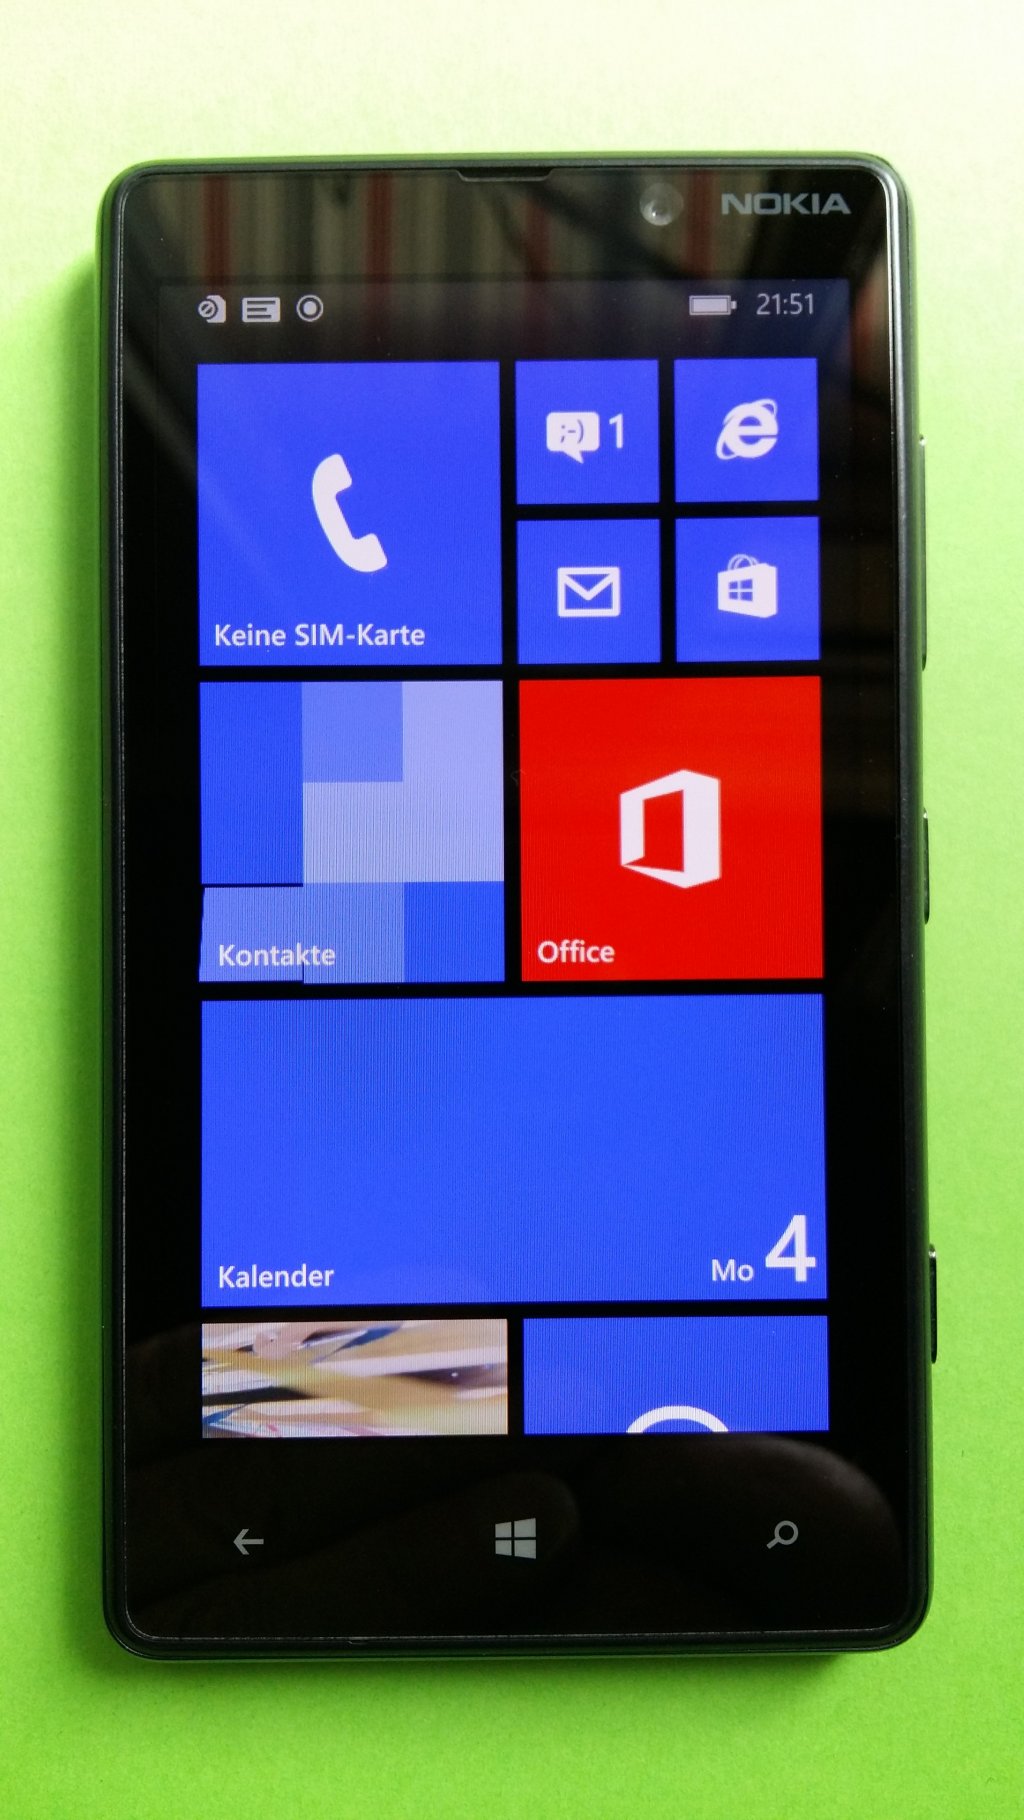 image-8093098-Nokia_820.1_Lumia_(1)1.w640.jpg